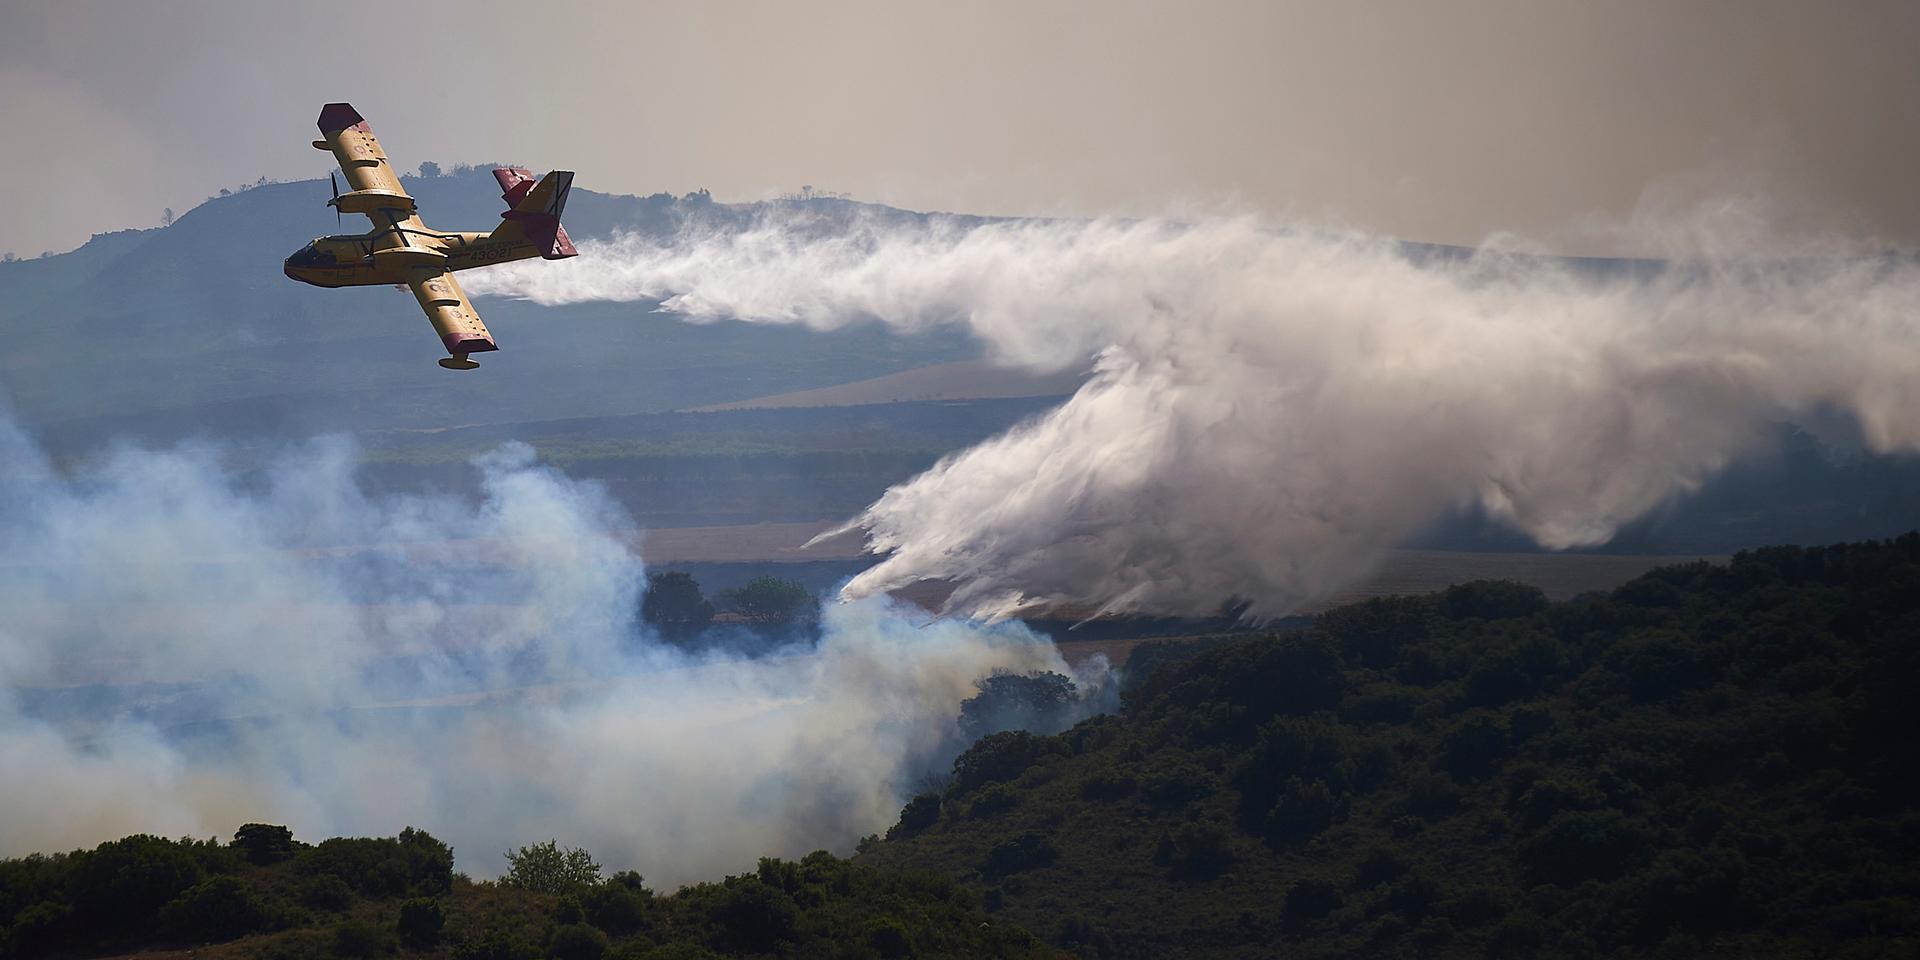 Brandmän i Spanien kämpar för att få kontroll över de kraftiga skogsbränder som härjar i den norra delen av landet.